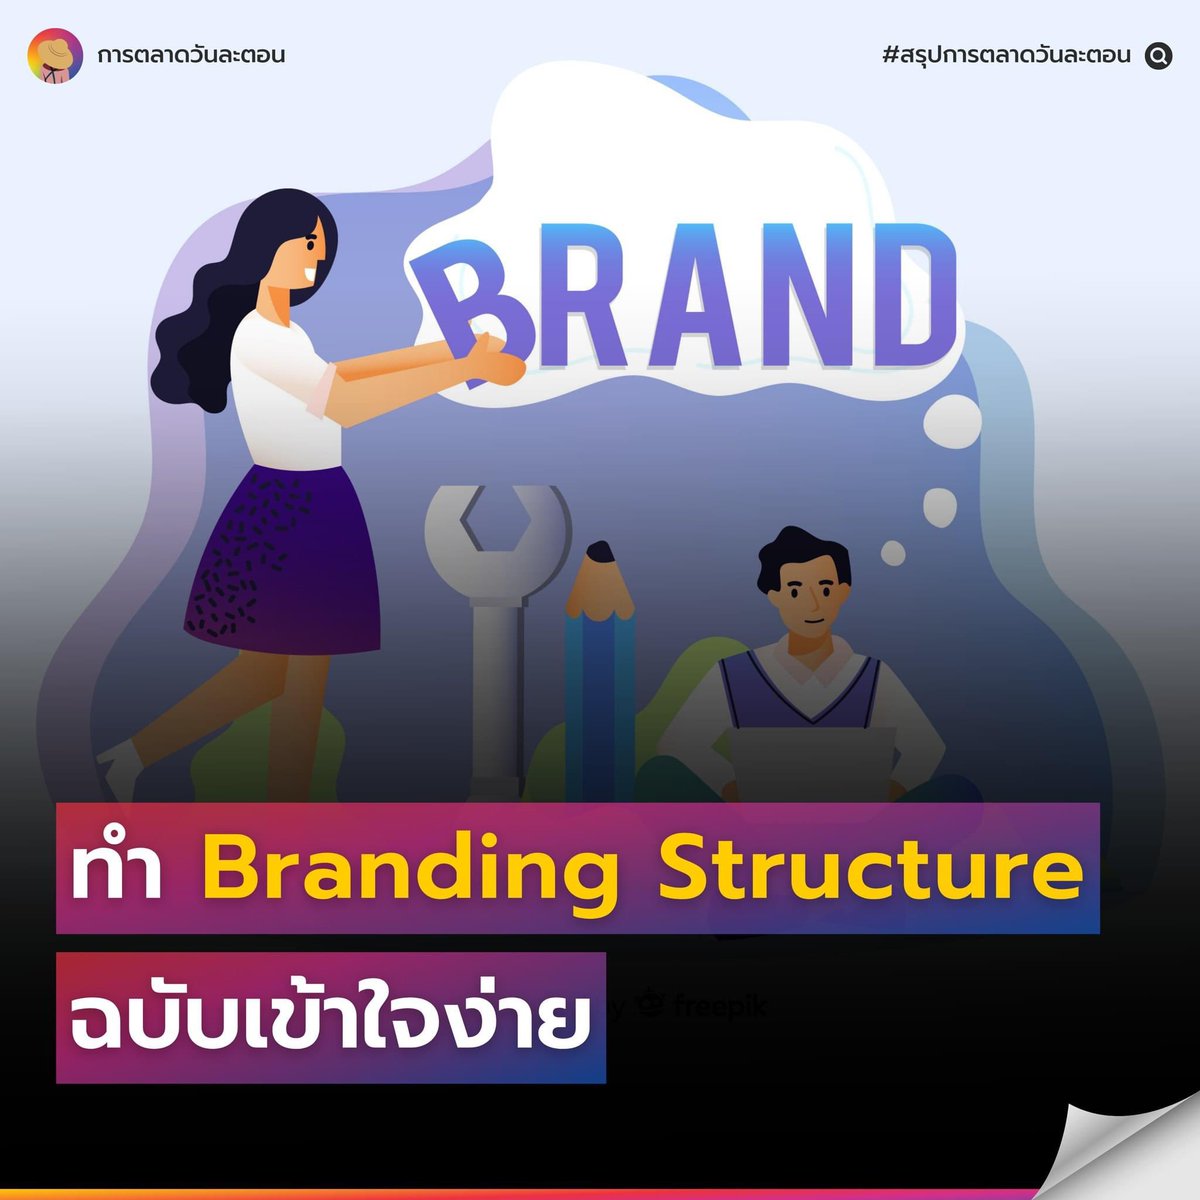 #การตลาดวันละตอน #สรุปการตลาดวันละตอน

#BrandExperience #BrandStrategy #Branding #การตลาด

ทำความเข้าใจ Branding Structure โครงสร้างในการสร้างแบรนด์ให้แข็งแรงและมีประสิทธิภาพมากขึ้น จากหนังสือ Brand Storydoing Wins
.
อ่านบทความตัวเต็มได้ที่ > everydaymarketing.co/book-recommend…